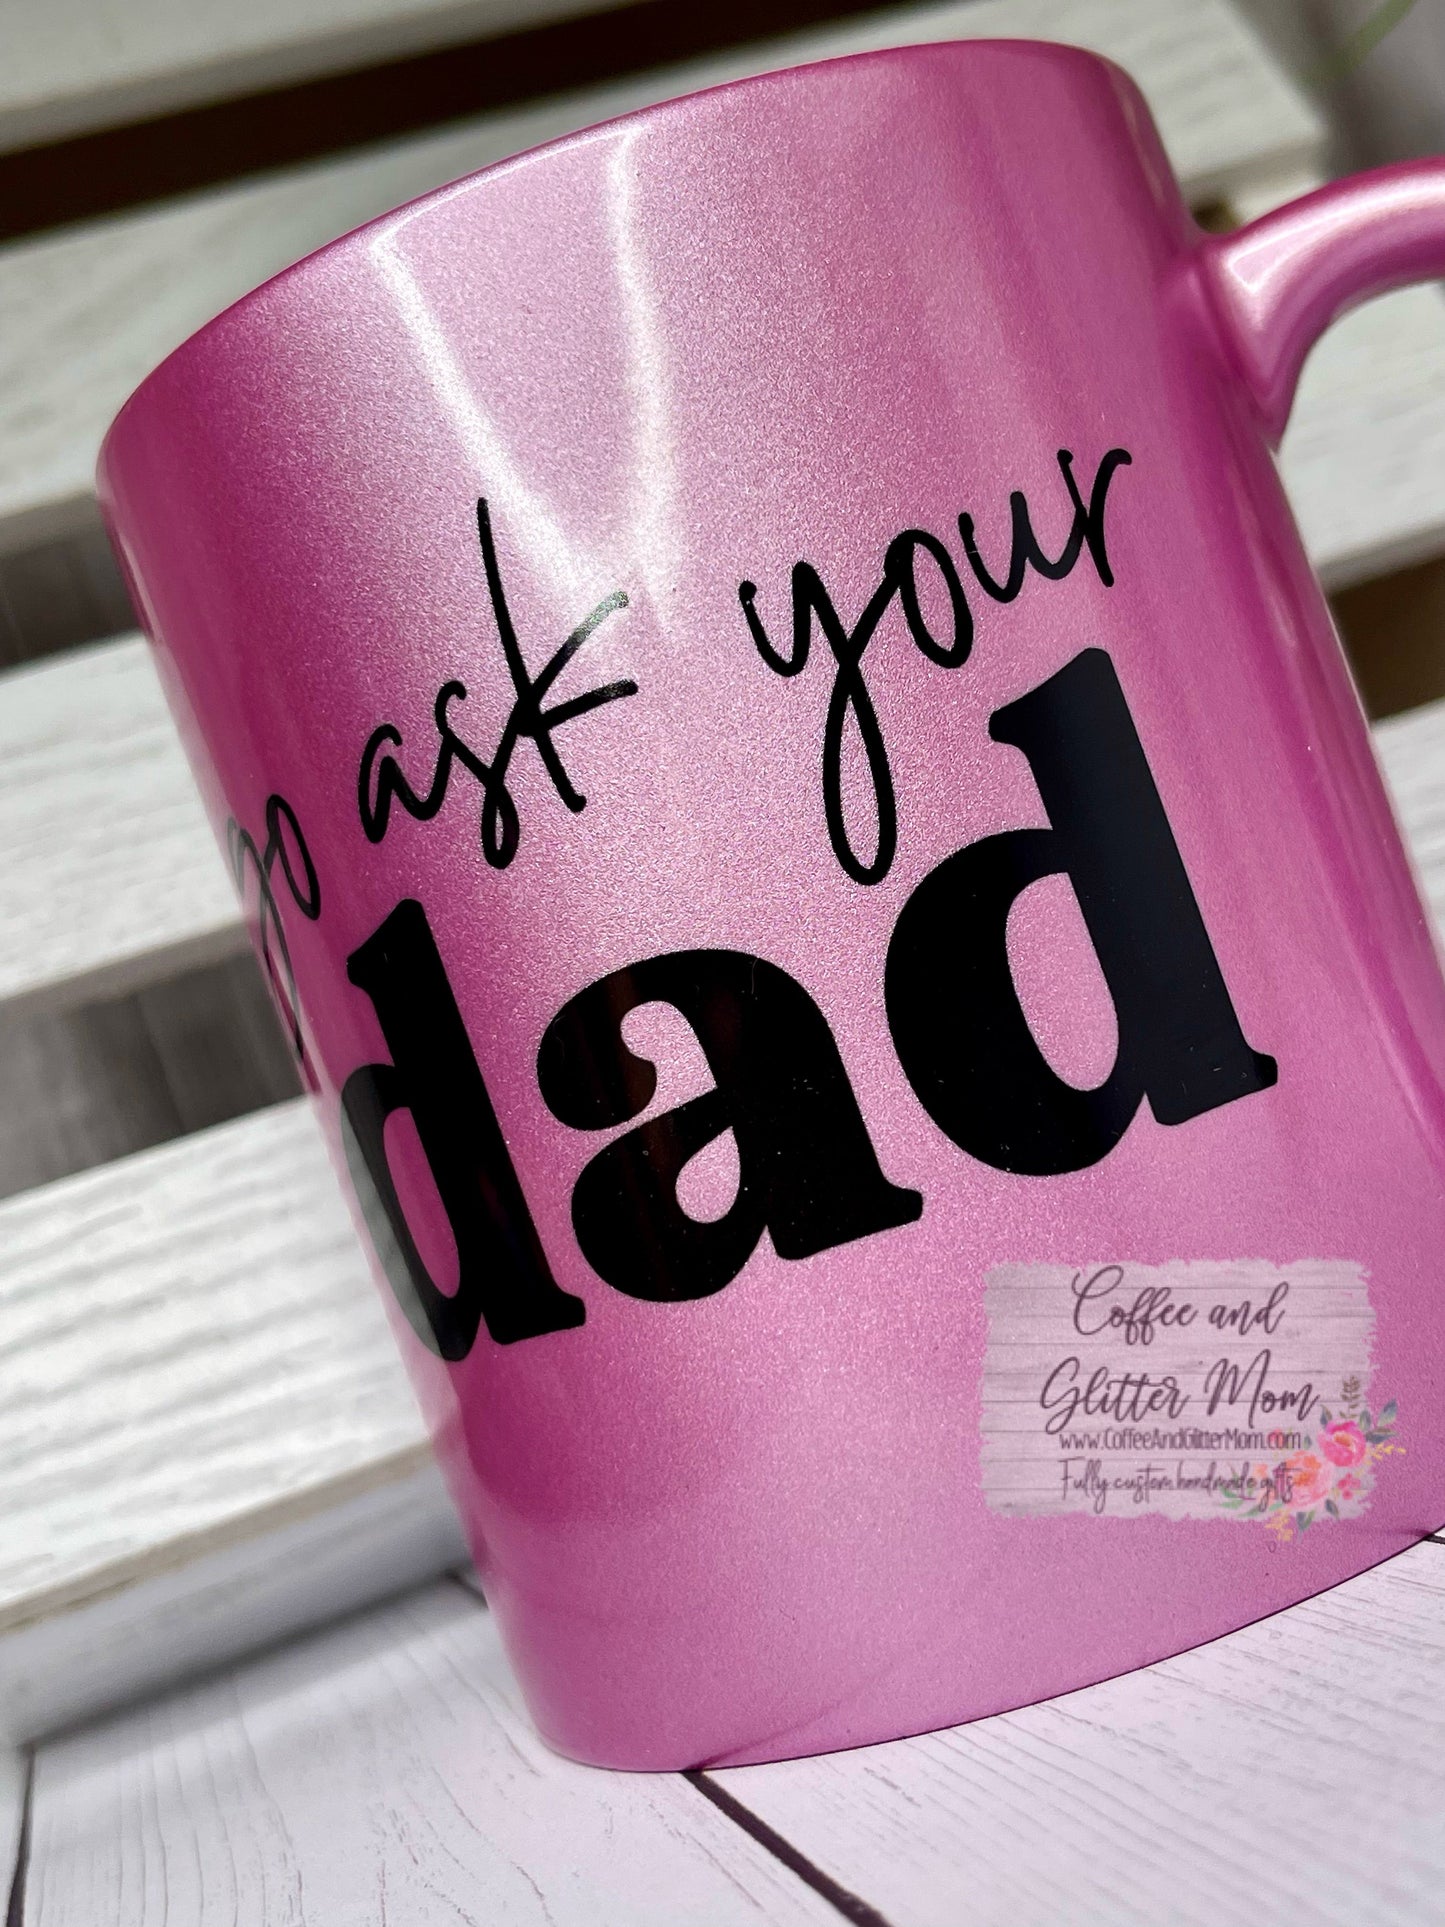 Go Ask Dad 11oz Pink Pearl Ceramic Mug